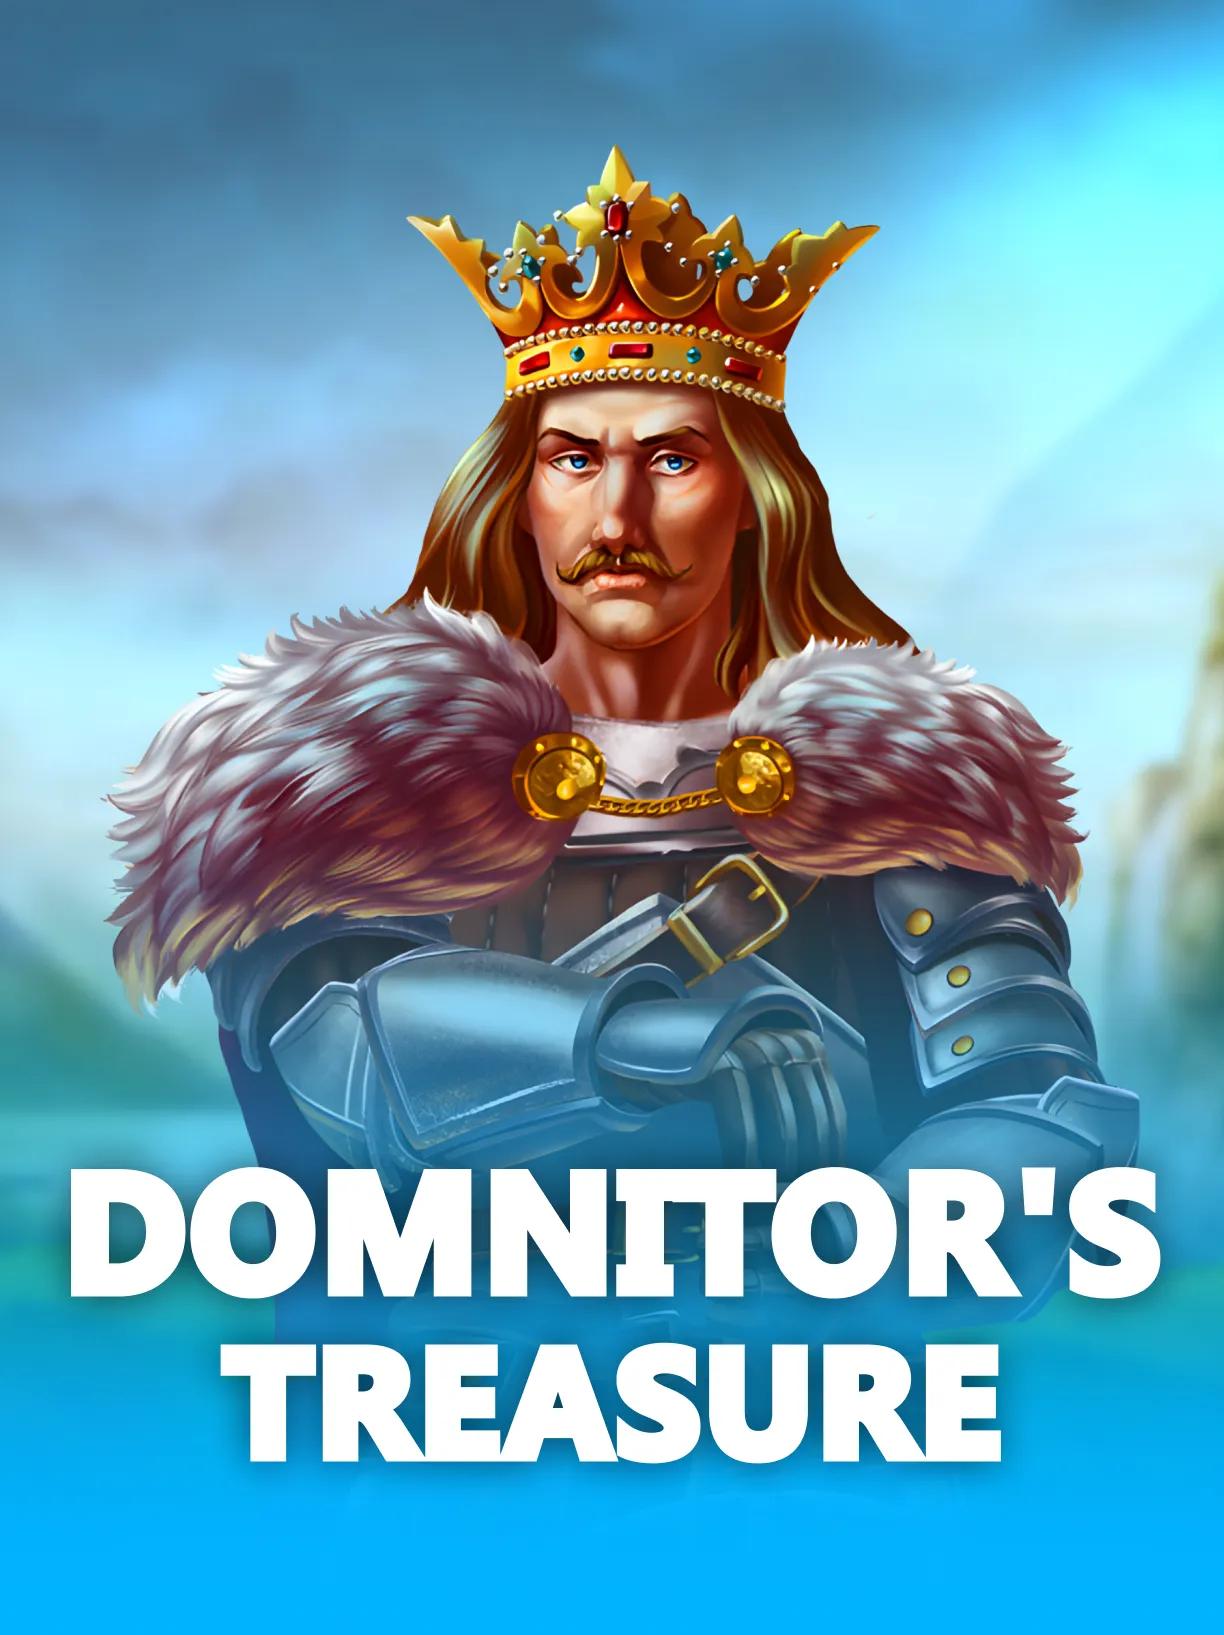 Domnitor's_Treasure_square.webp